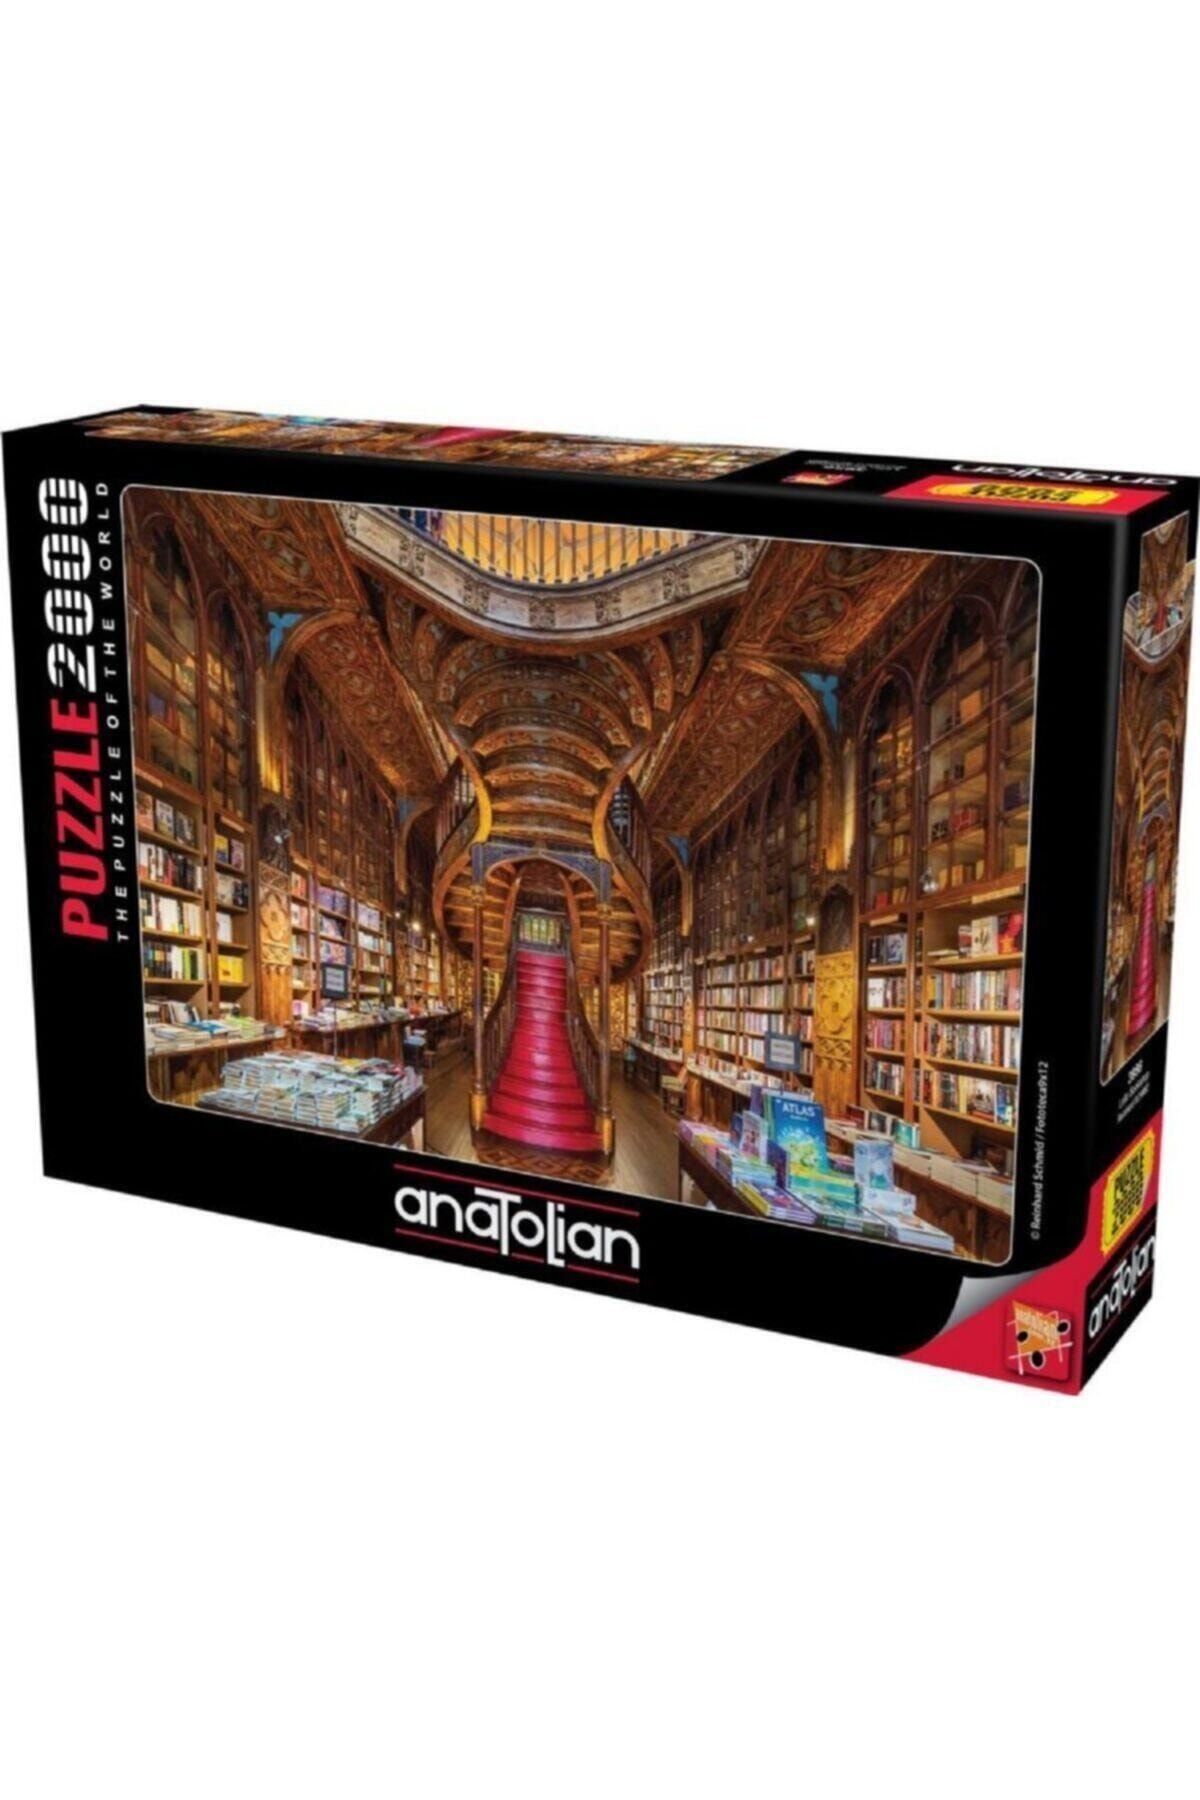 Comprar Anatolian Puzzle Roll guarda puzzle 9003